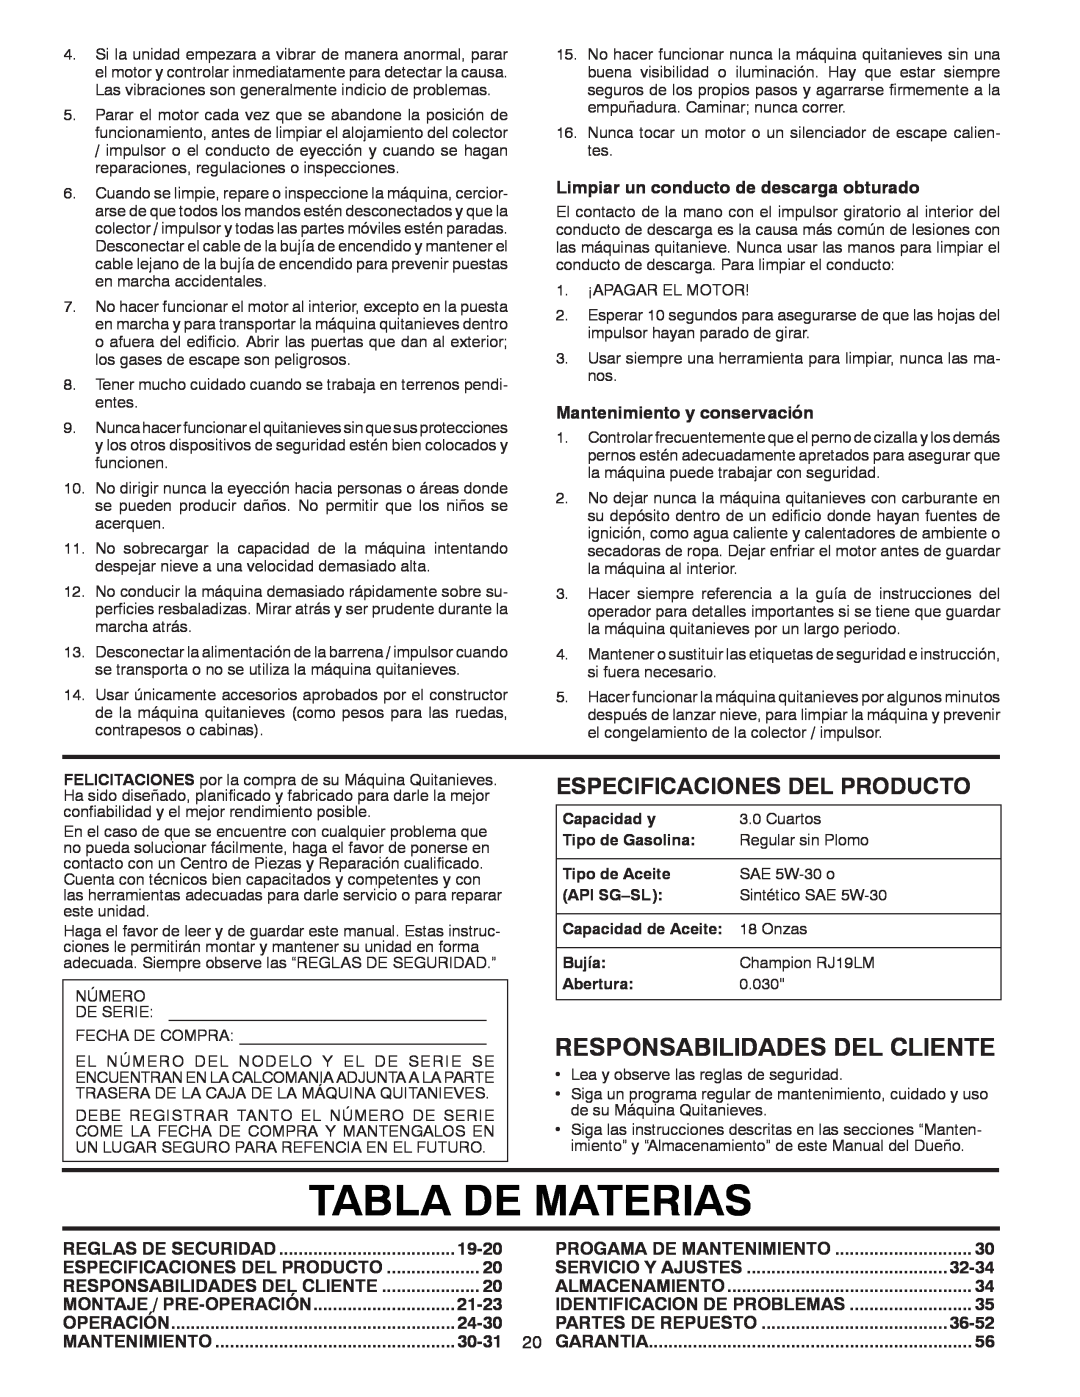 Poulan 96194000503 Tabla De Materias, Responsabilidades Del Cliente, Especificaciones Del Producto, 19-20, 21-23, 24-30 